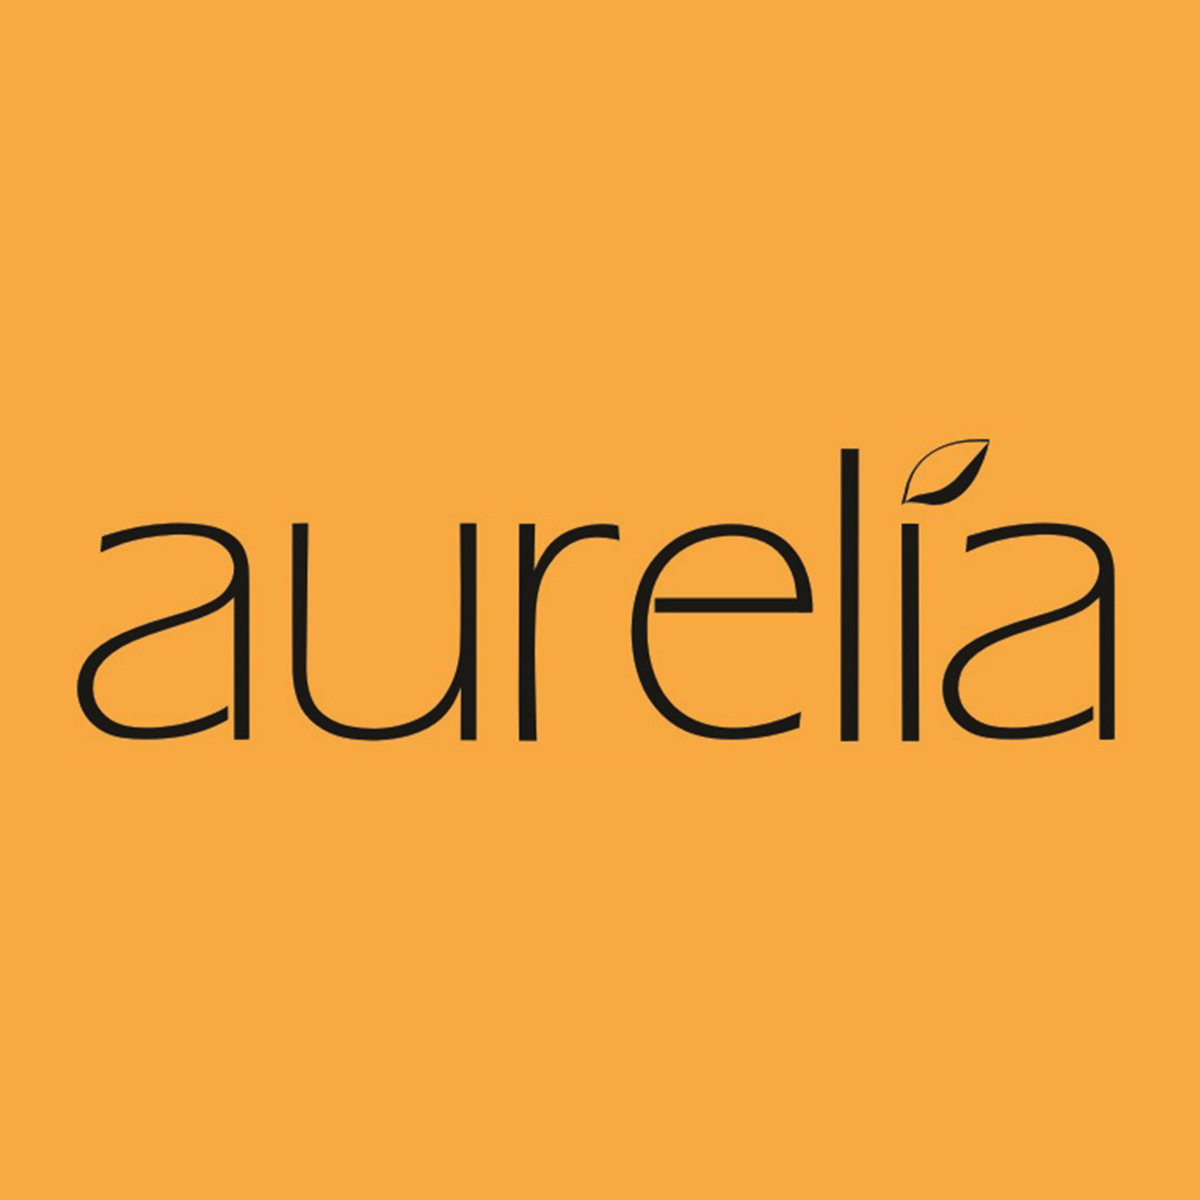 Aurelia, Next Galleria Malls